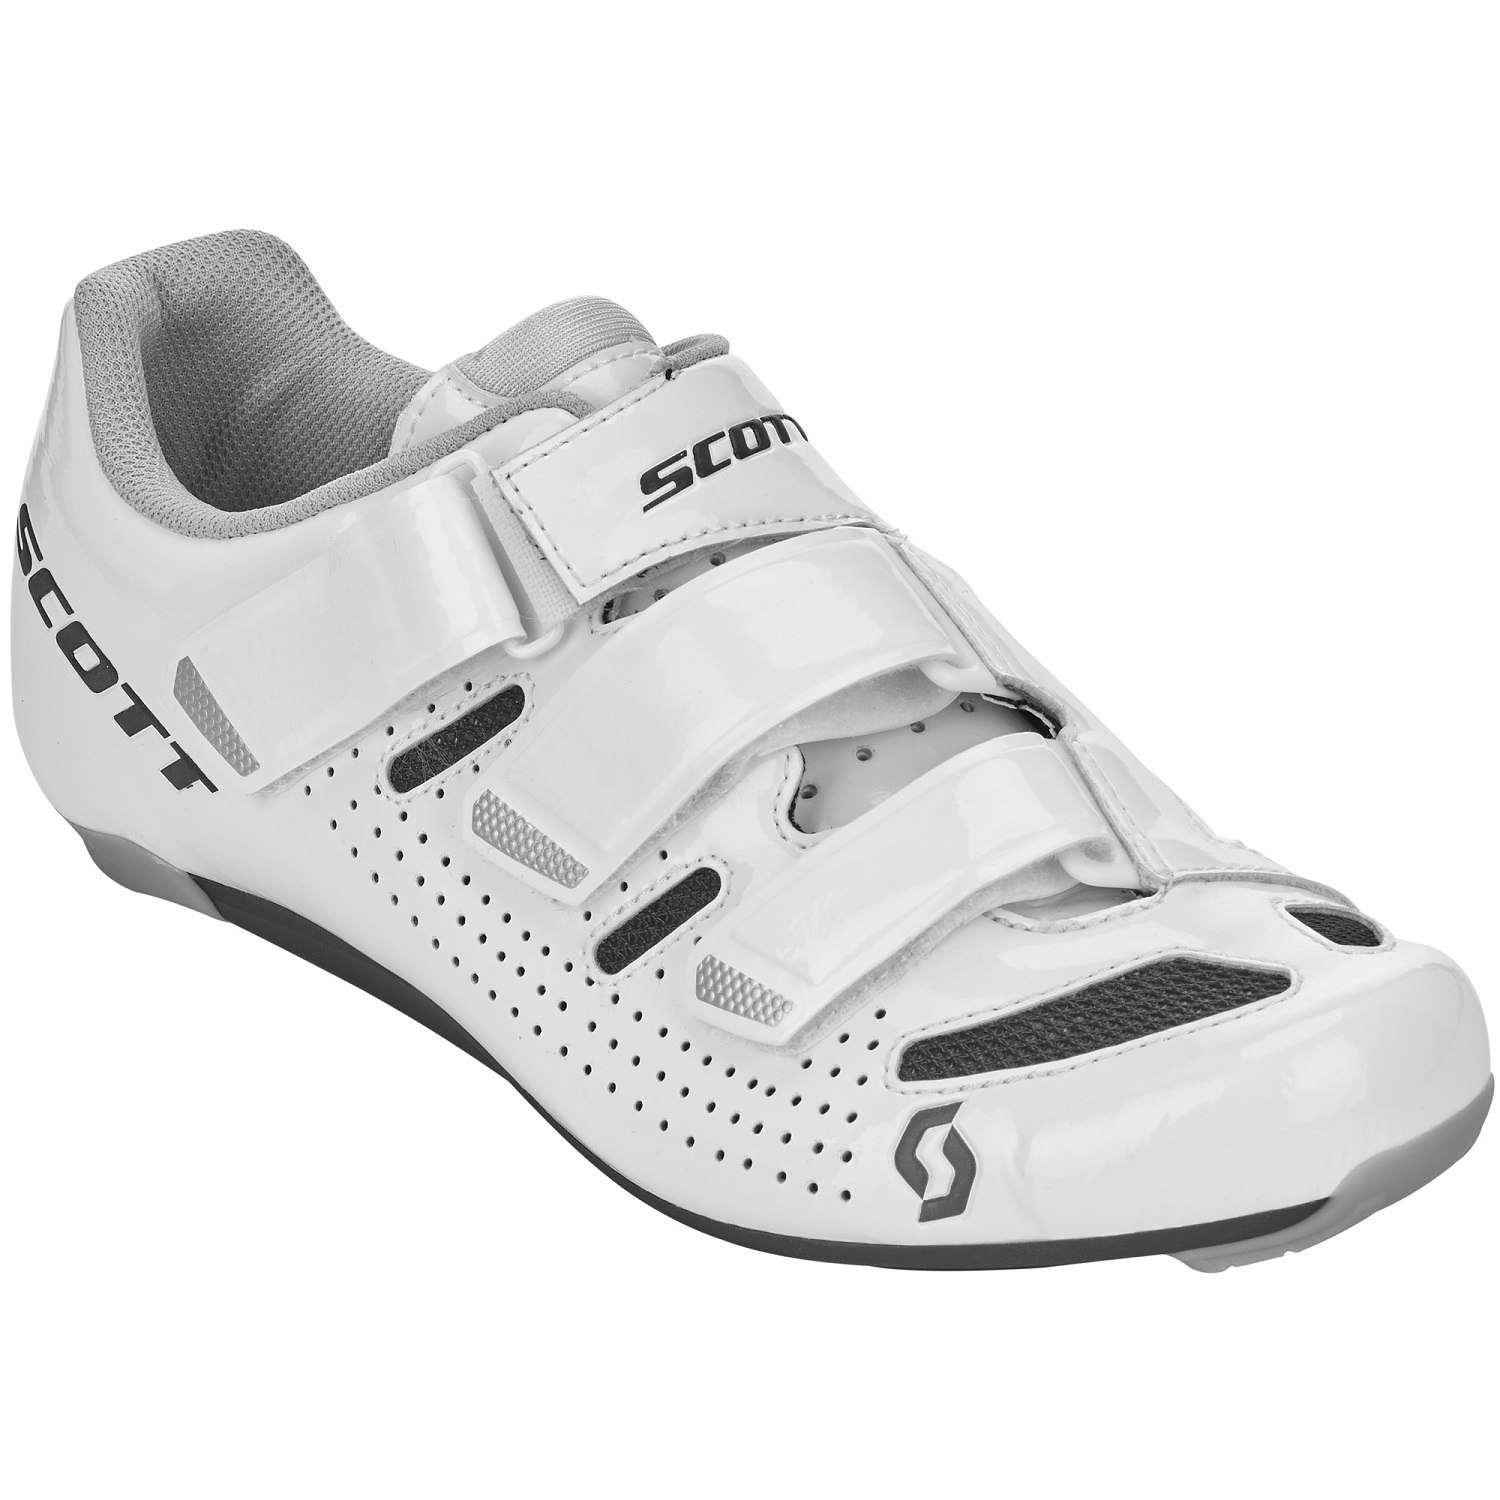 Produktbild von SCOTT Road Comp Rennradschuhe Damen - gloss white/gloss black